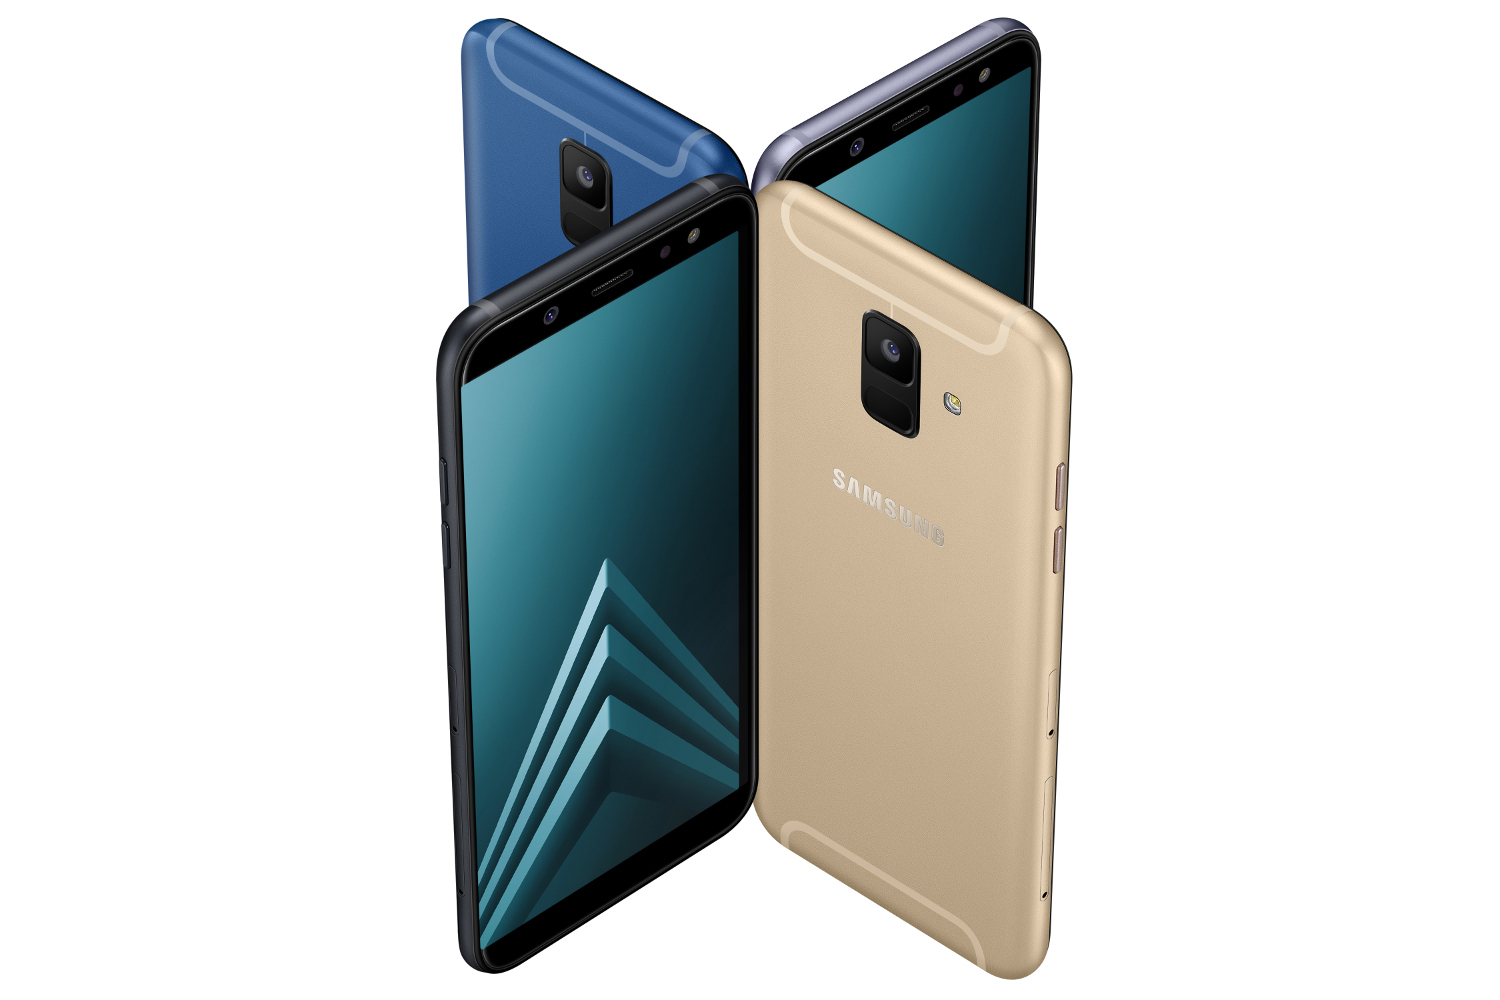 Samsung Galaxy A6 (2018) & Galaxy A6+ (2018) revealed,